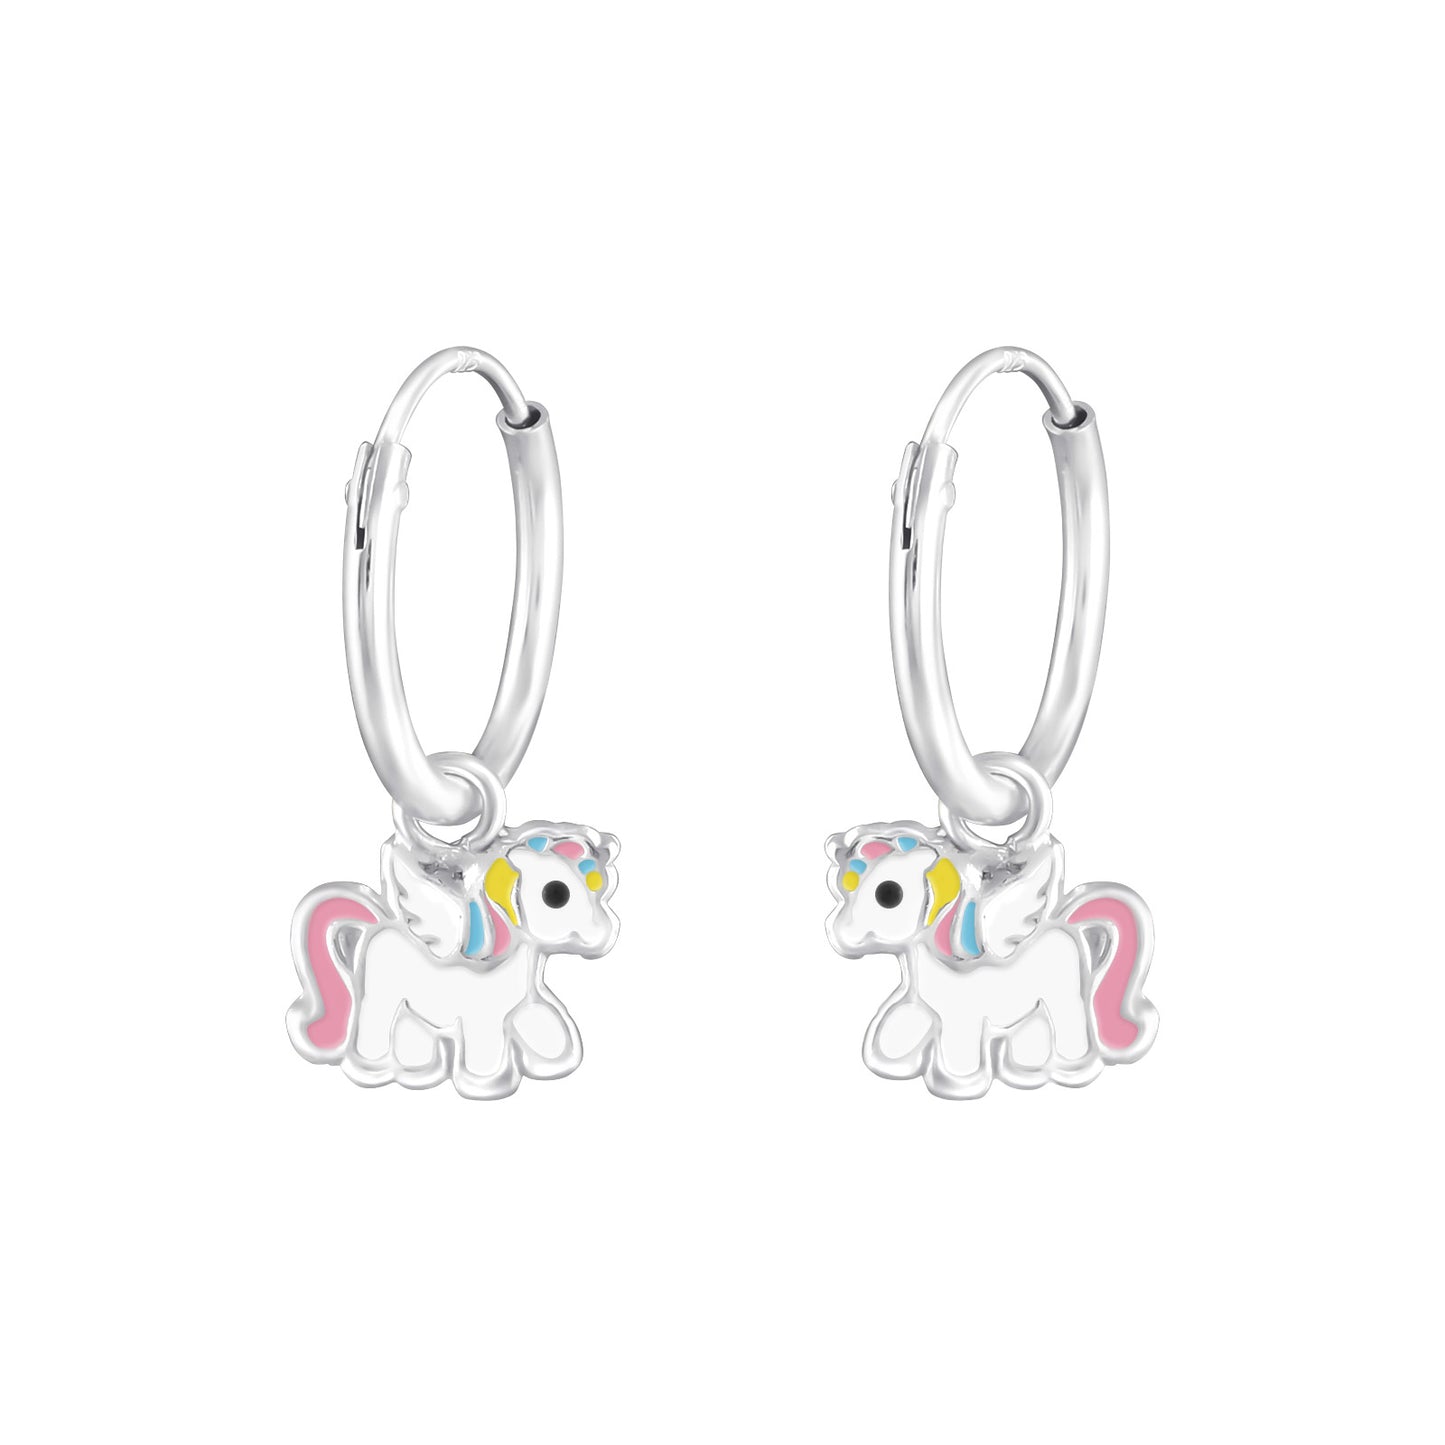 Unicorn Earrings - Kids Sleeper Earrings